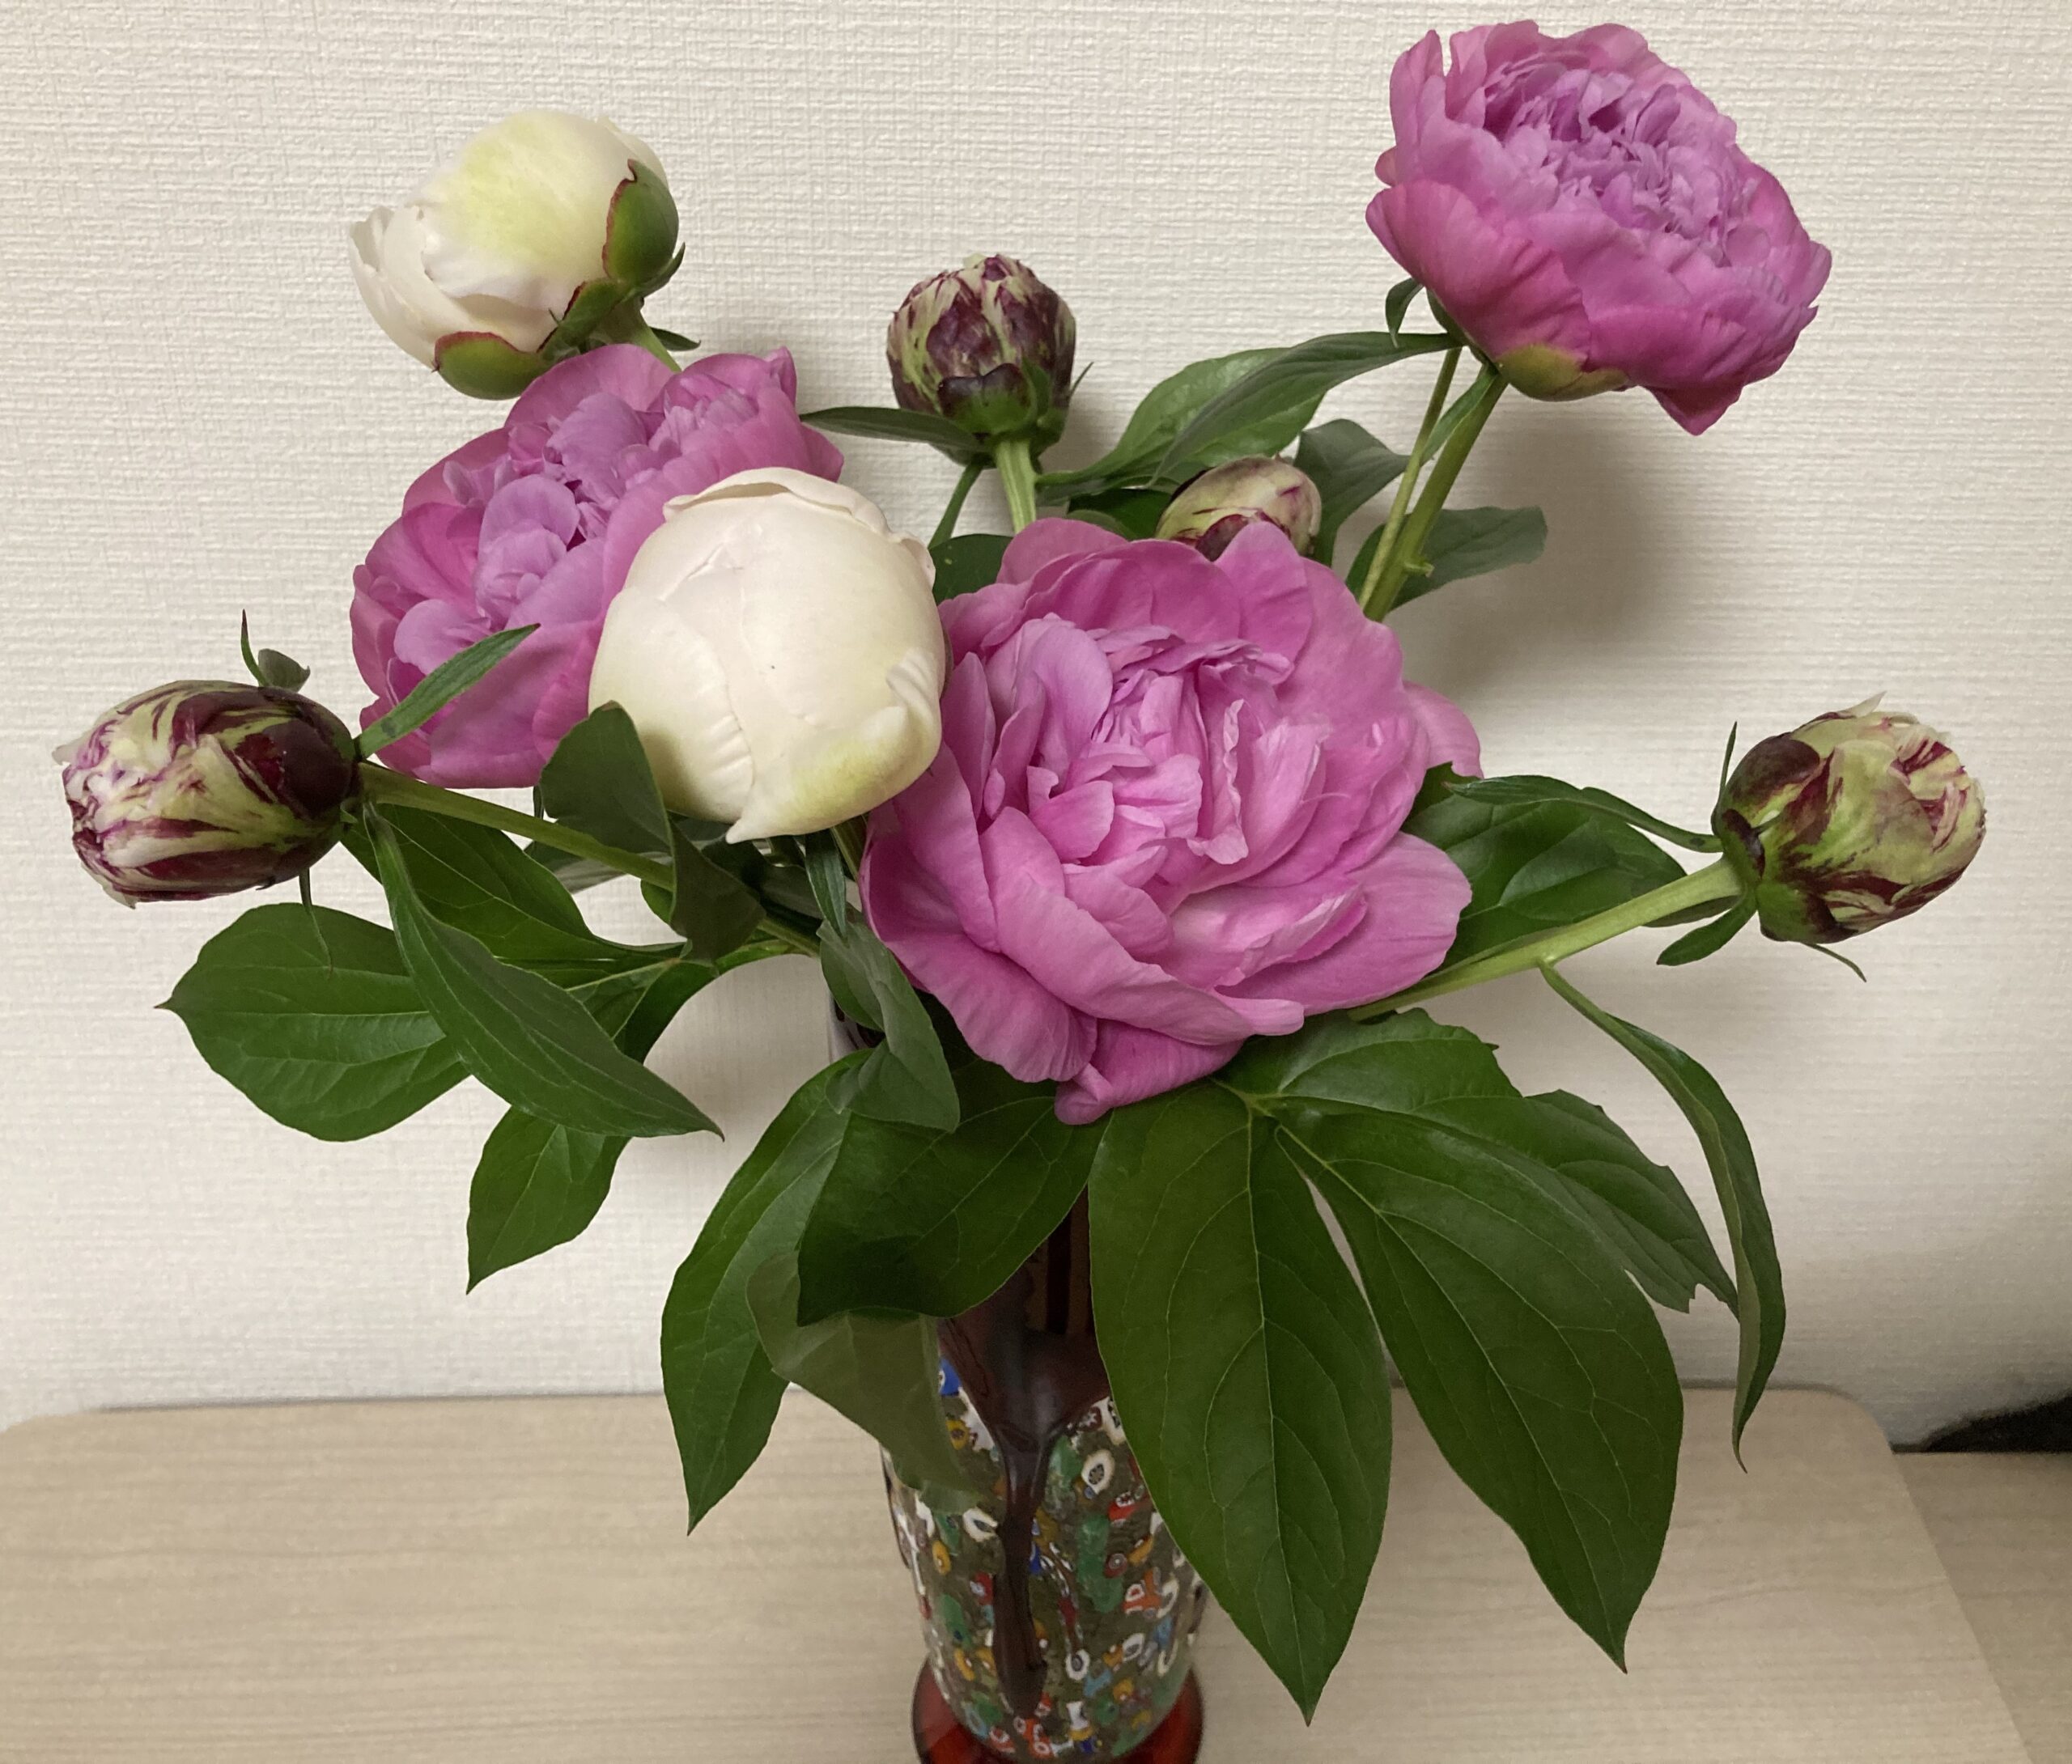 シャクヤクの切り花を花瓶に生けた写真①